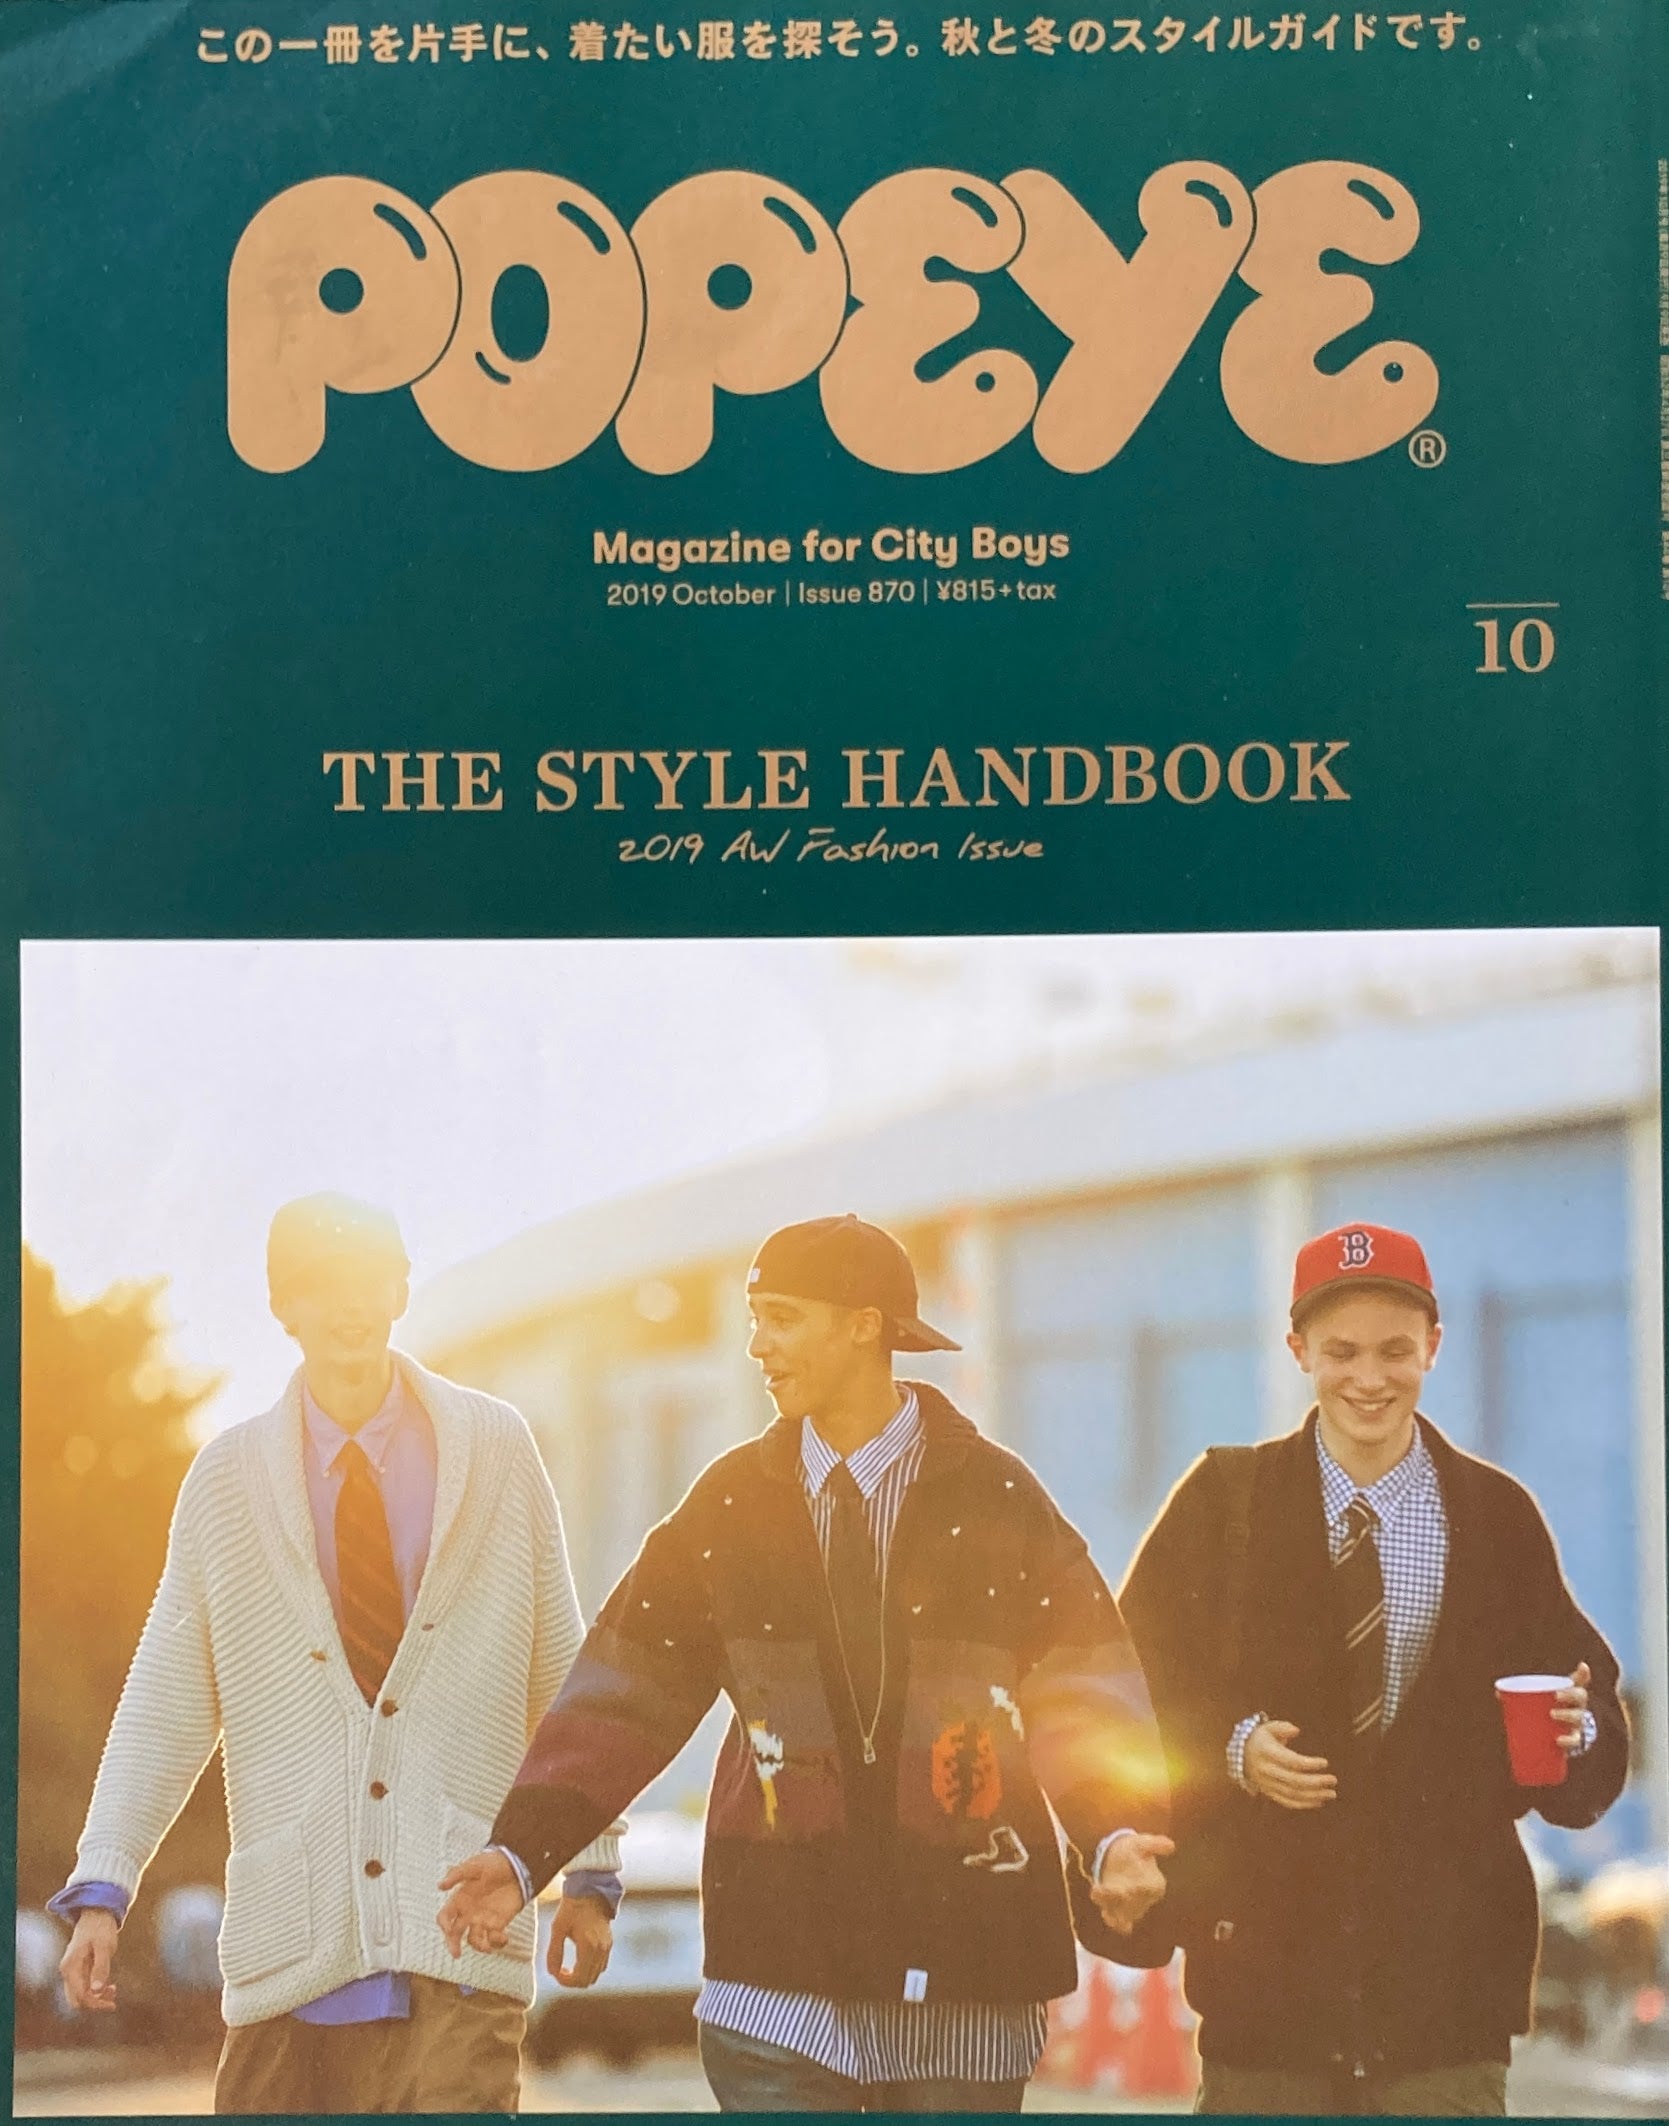 ポパイ POPEYE – Page 5 – smokebooks shop